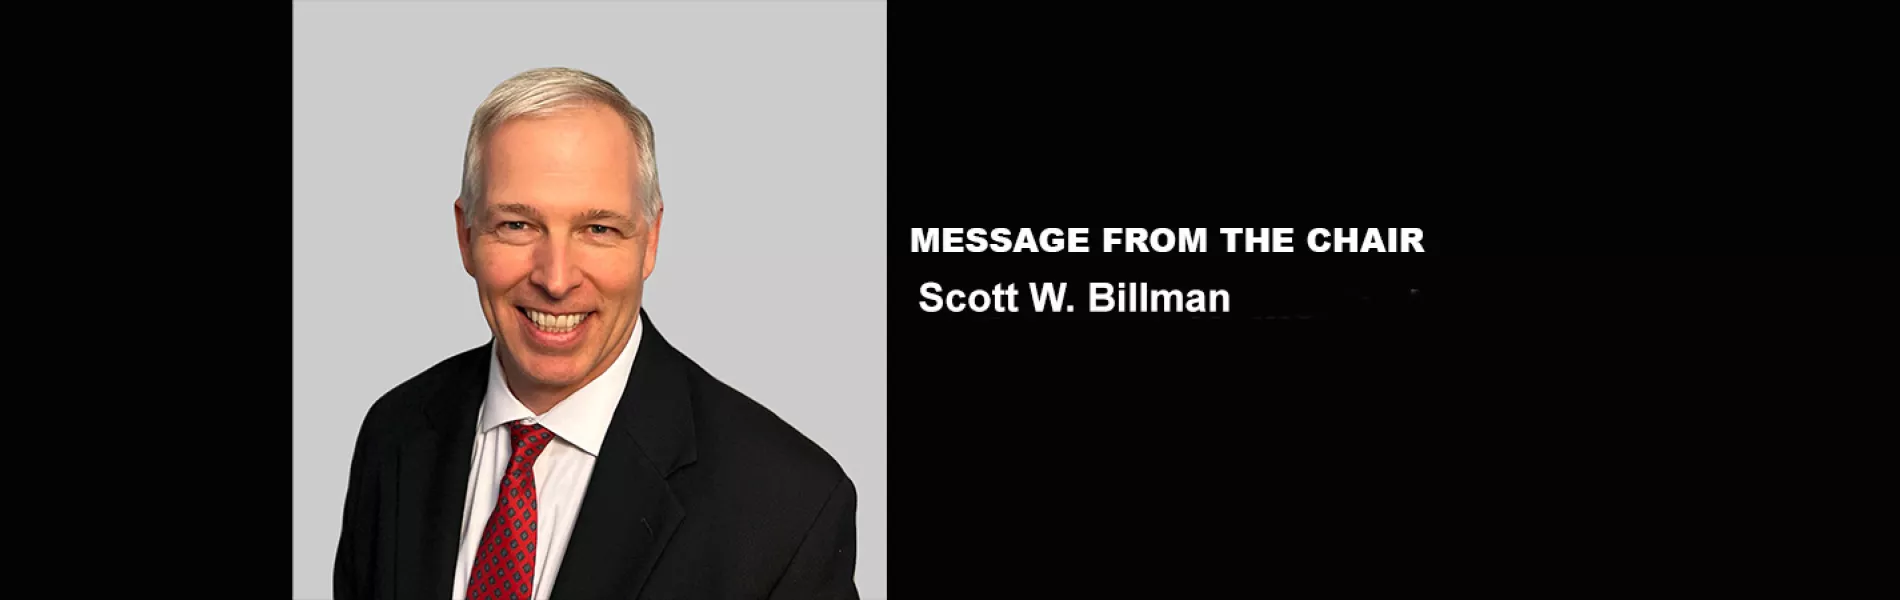 Message from the Chair: Scott W. Billman